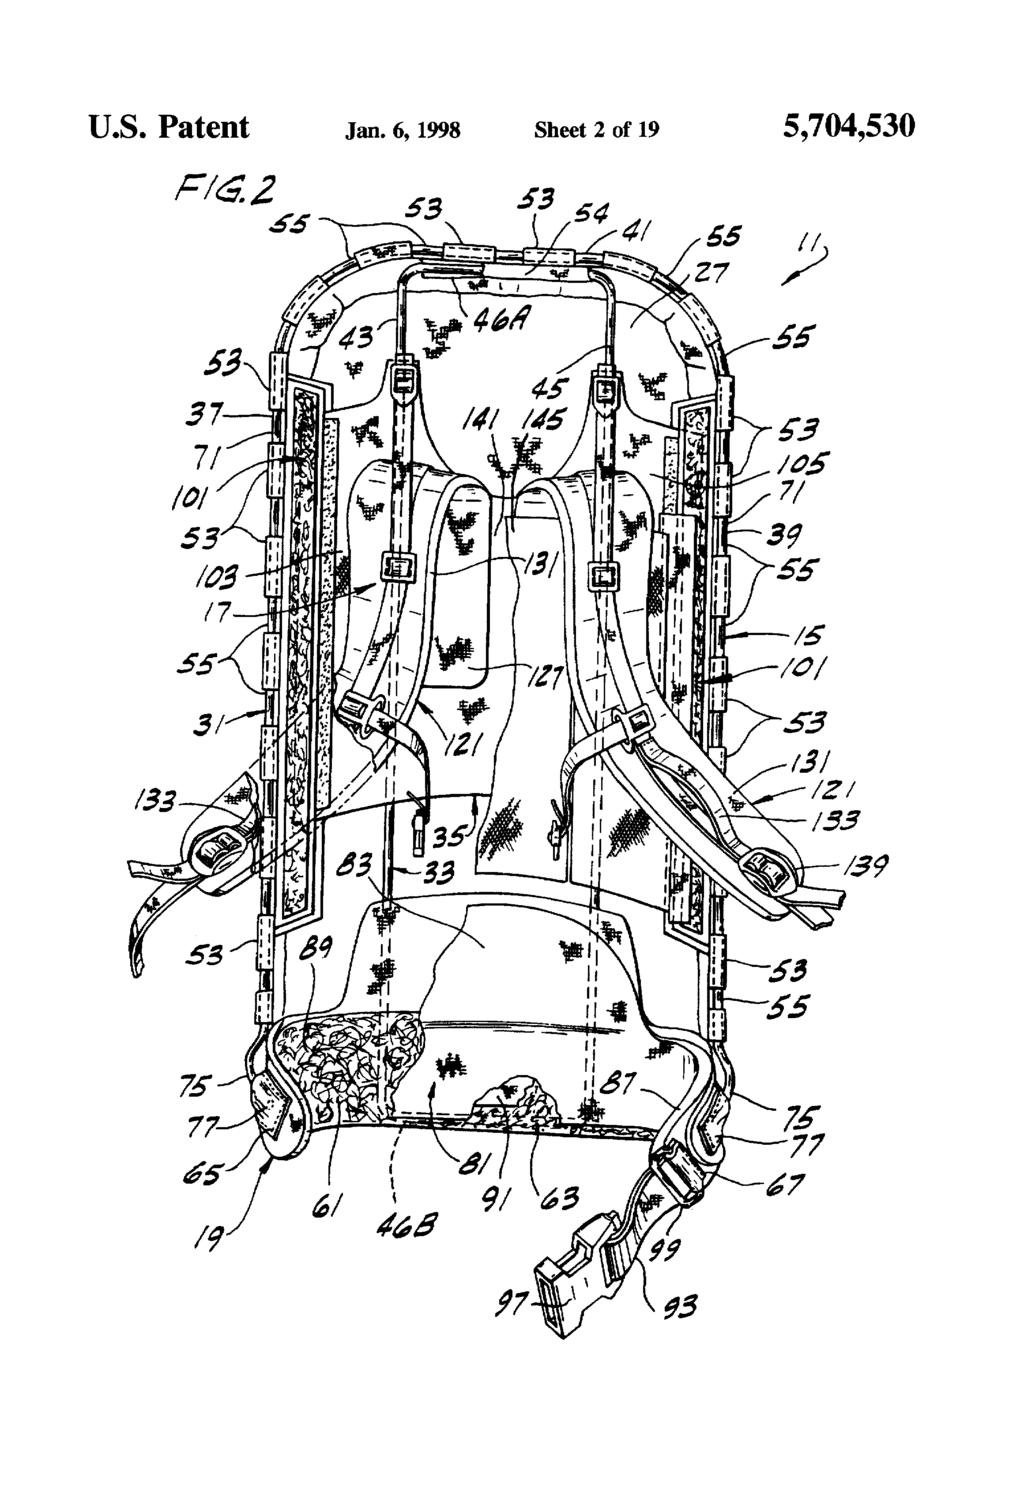 U.S. Patent Jan.